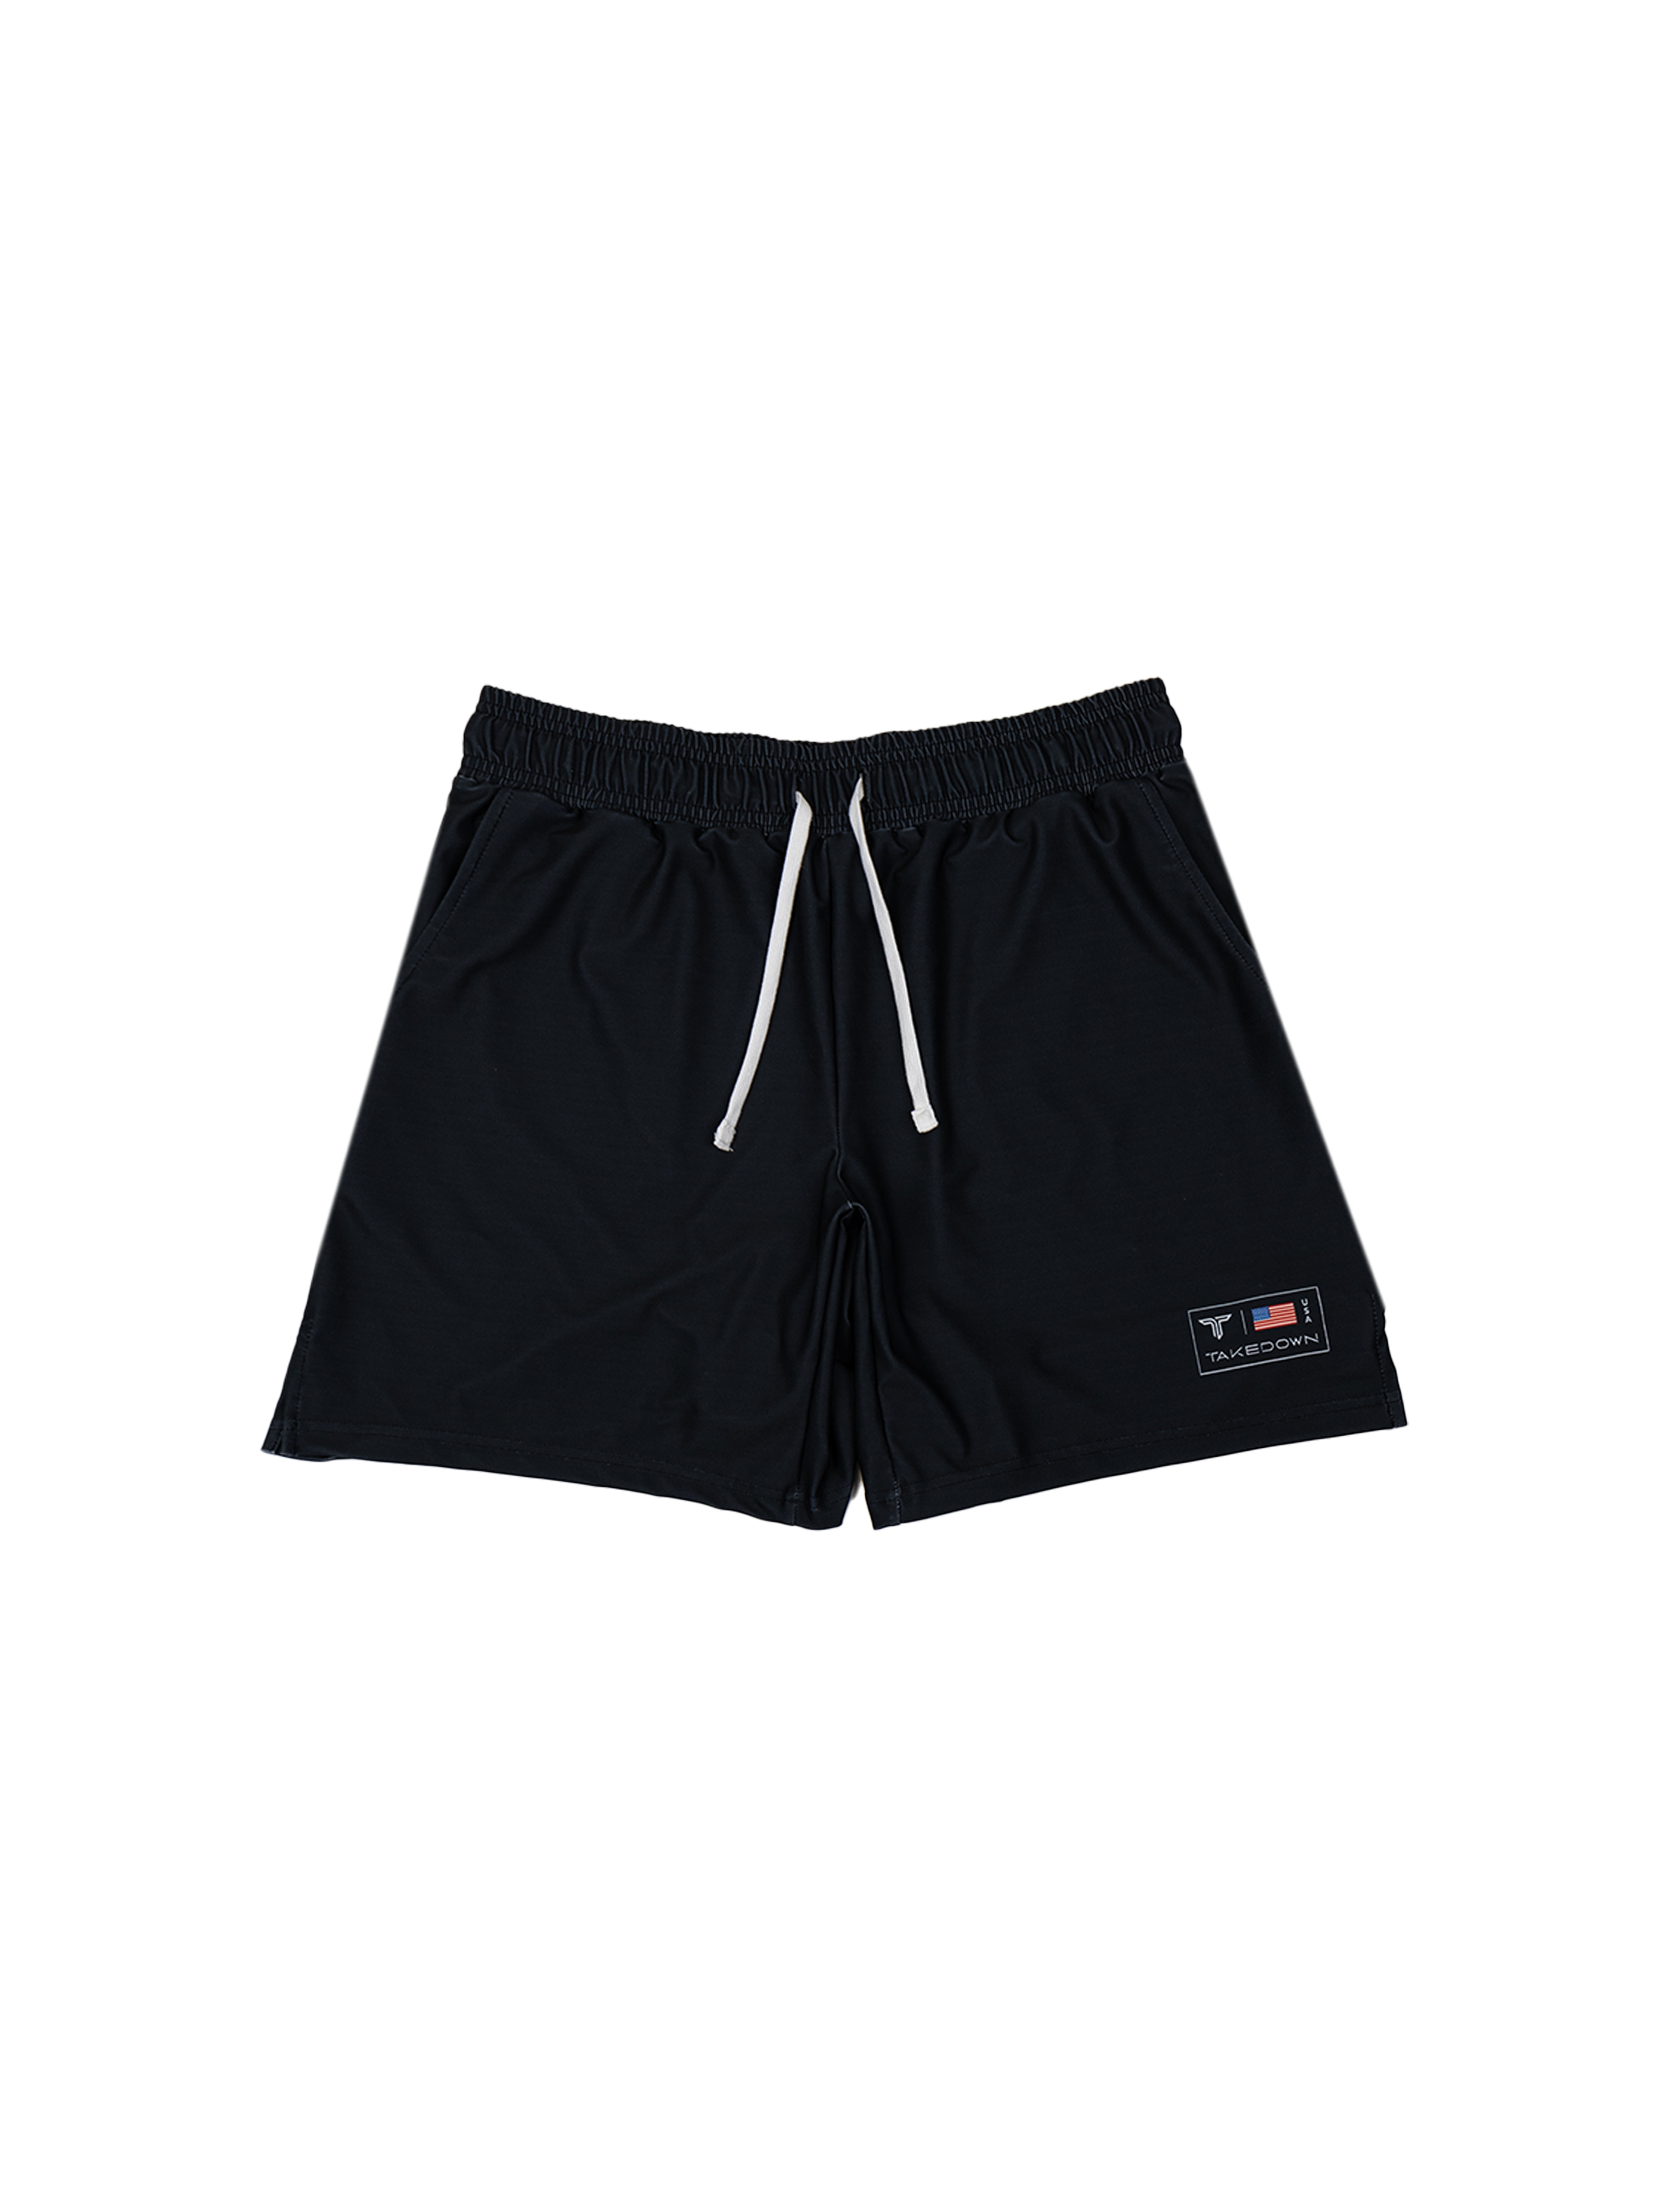 Raven Black Core Gym Shorts (5